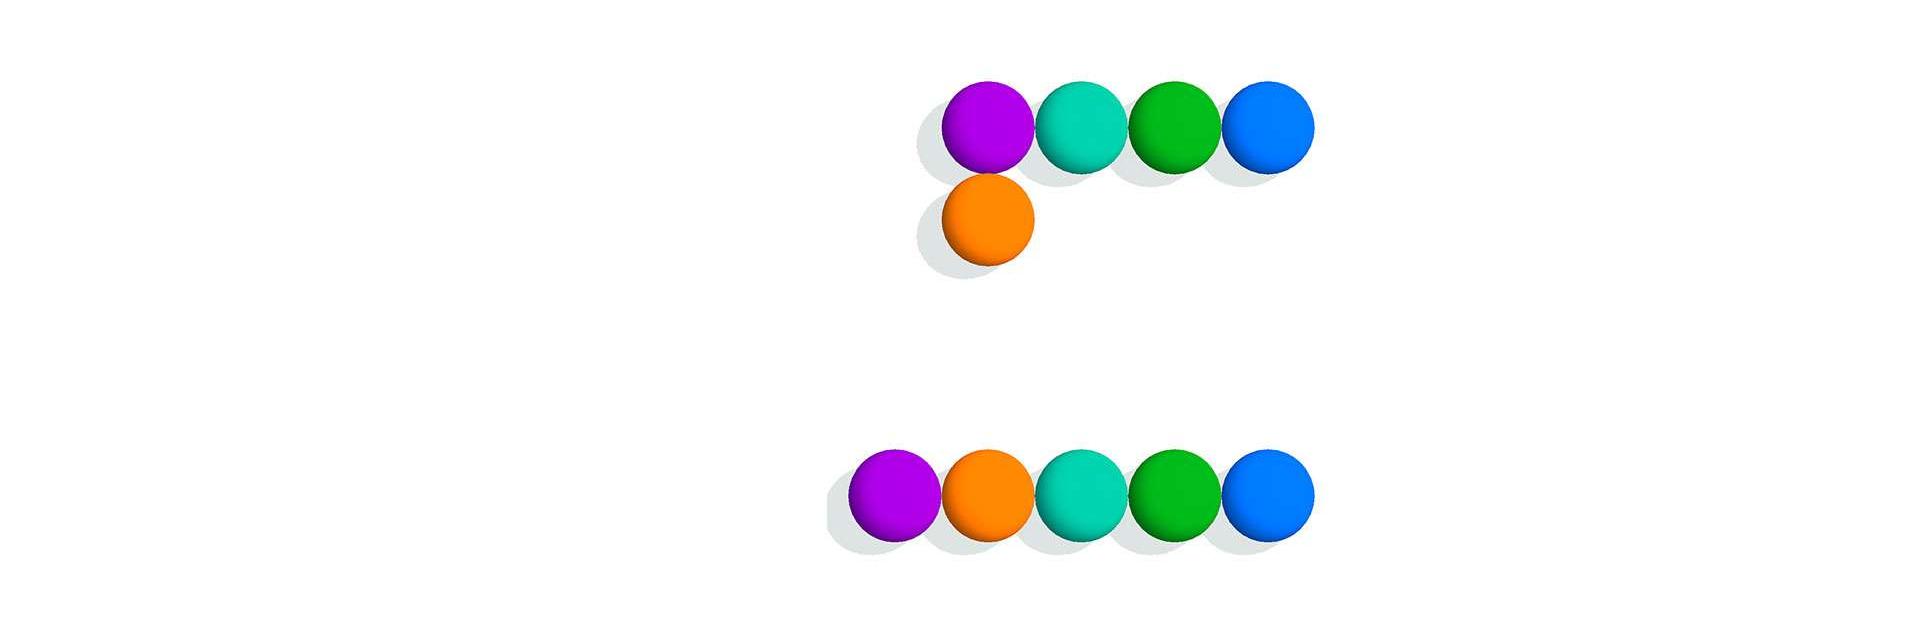 Connect Balls - Line Puzzle -